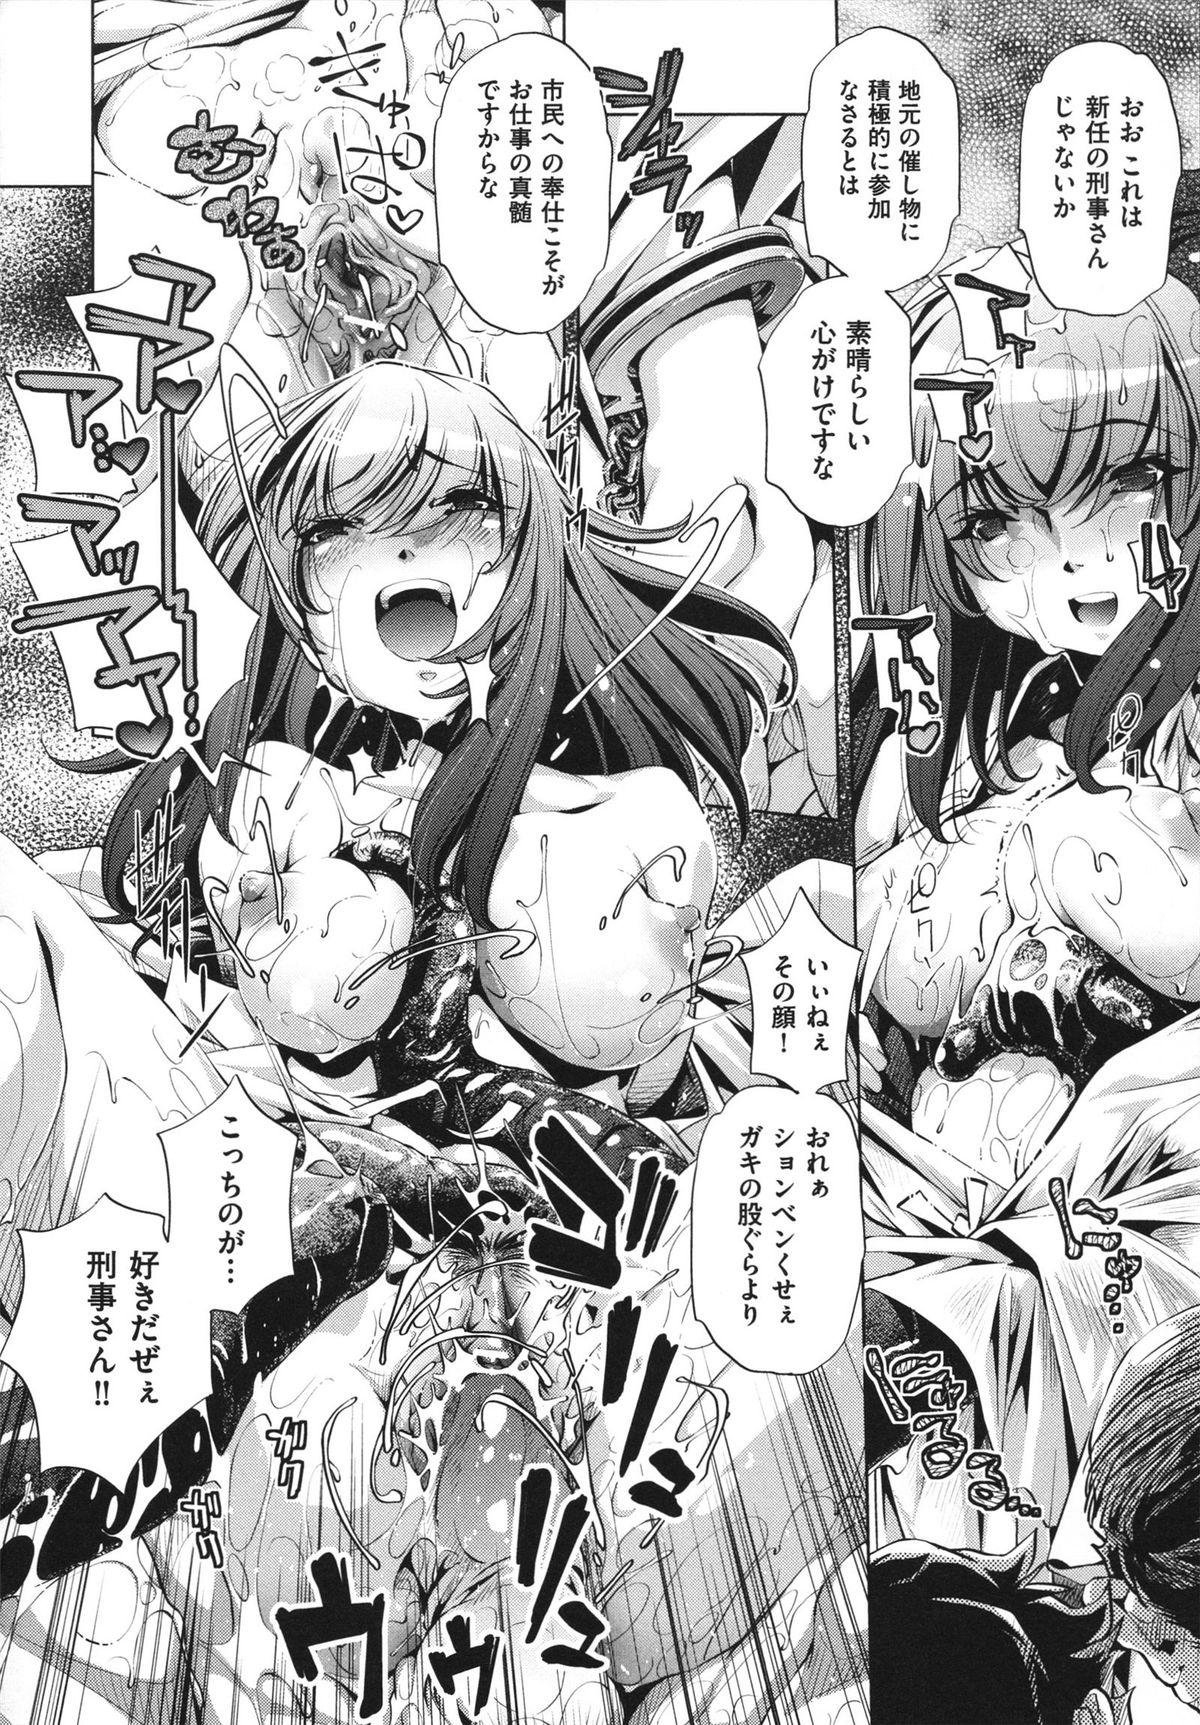 [Ootori Ryuuji] Shokushu wa Yawarakana Chibusa ni Makitsuki Onna-tachi no Ana wo Kakimidasu - Feeler coils around a soft breast and violates women's hole. 175